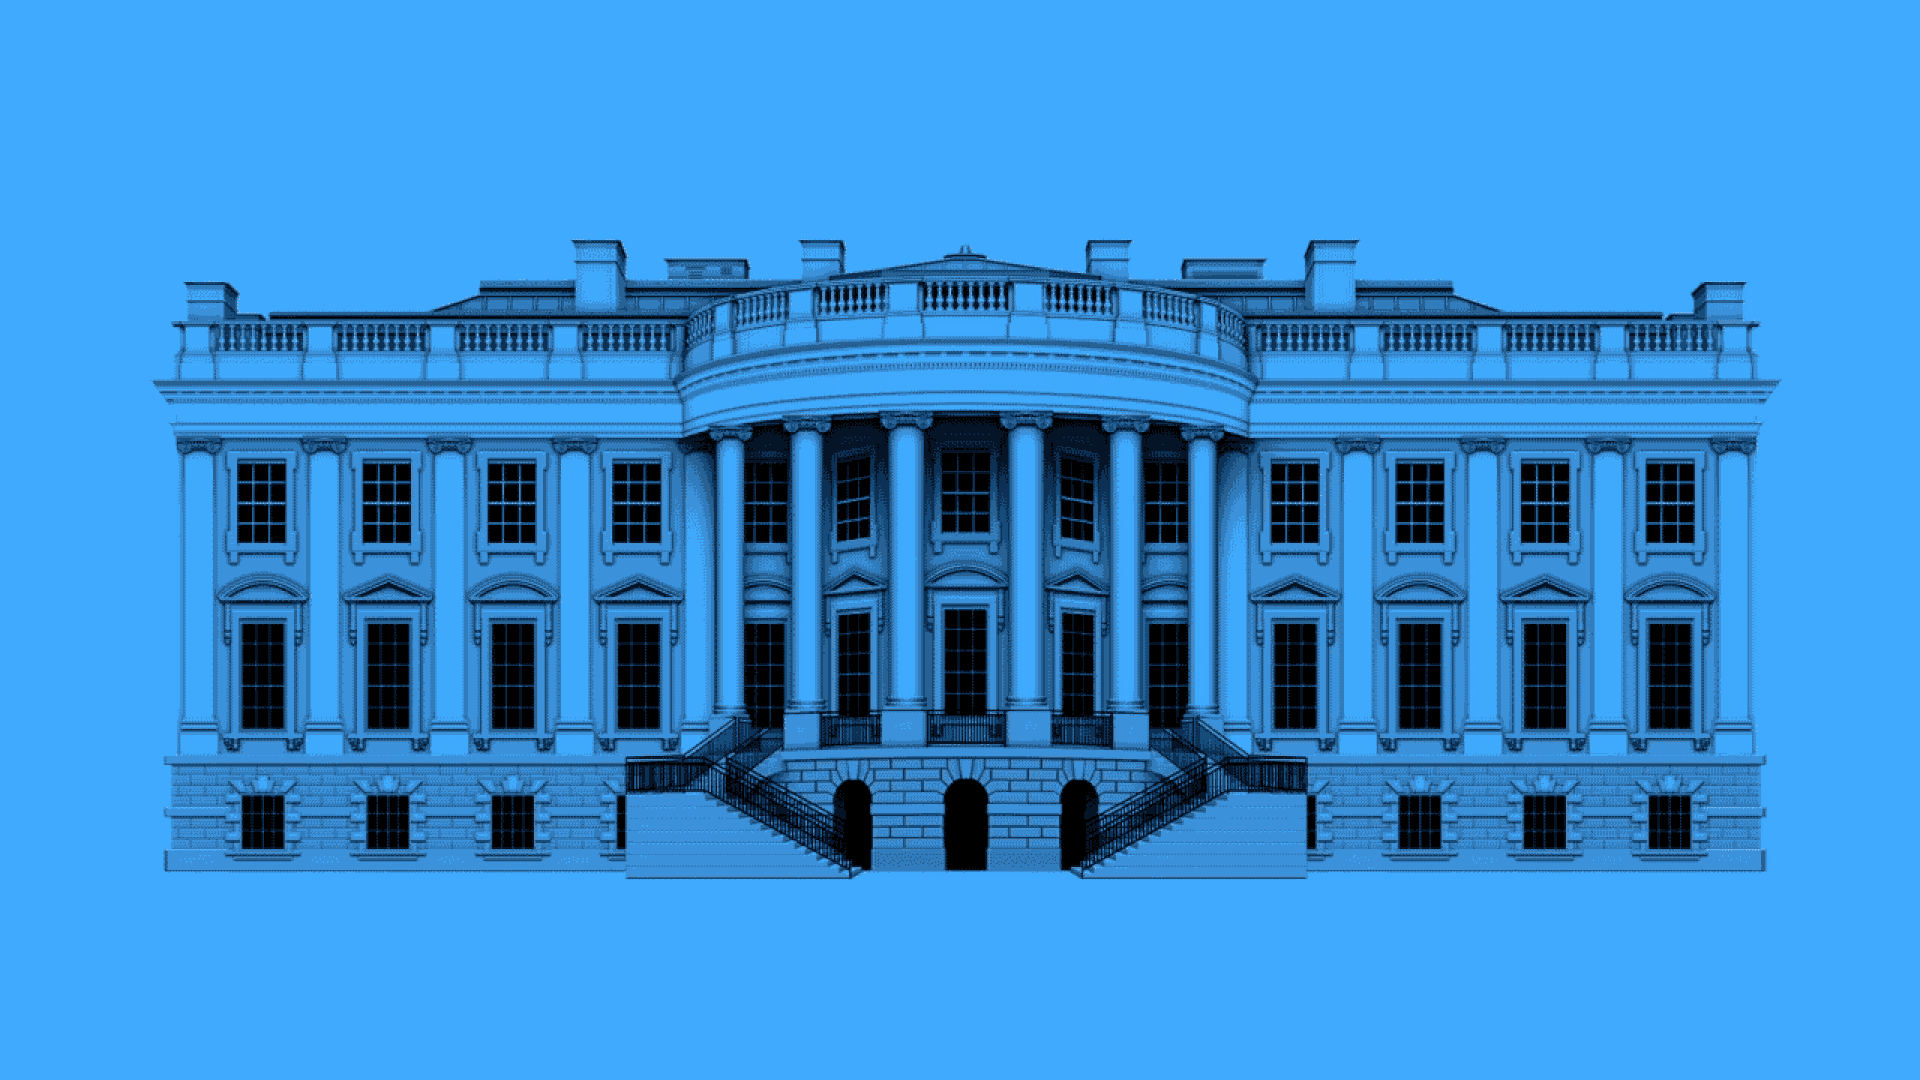 An extraordinary Oval Office leak.